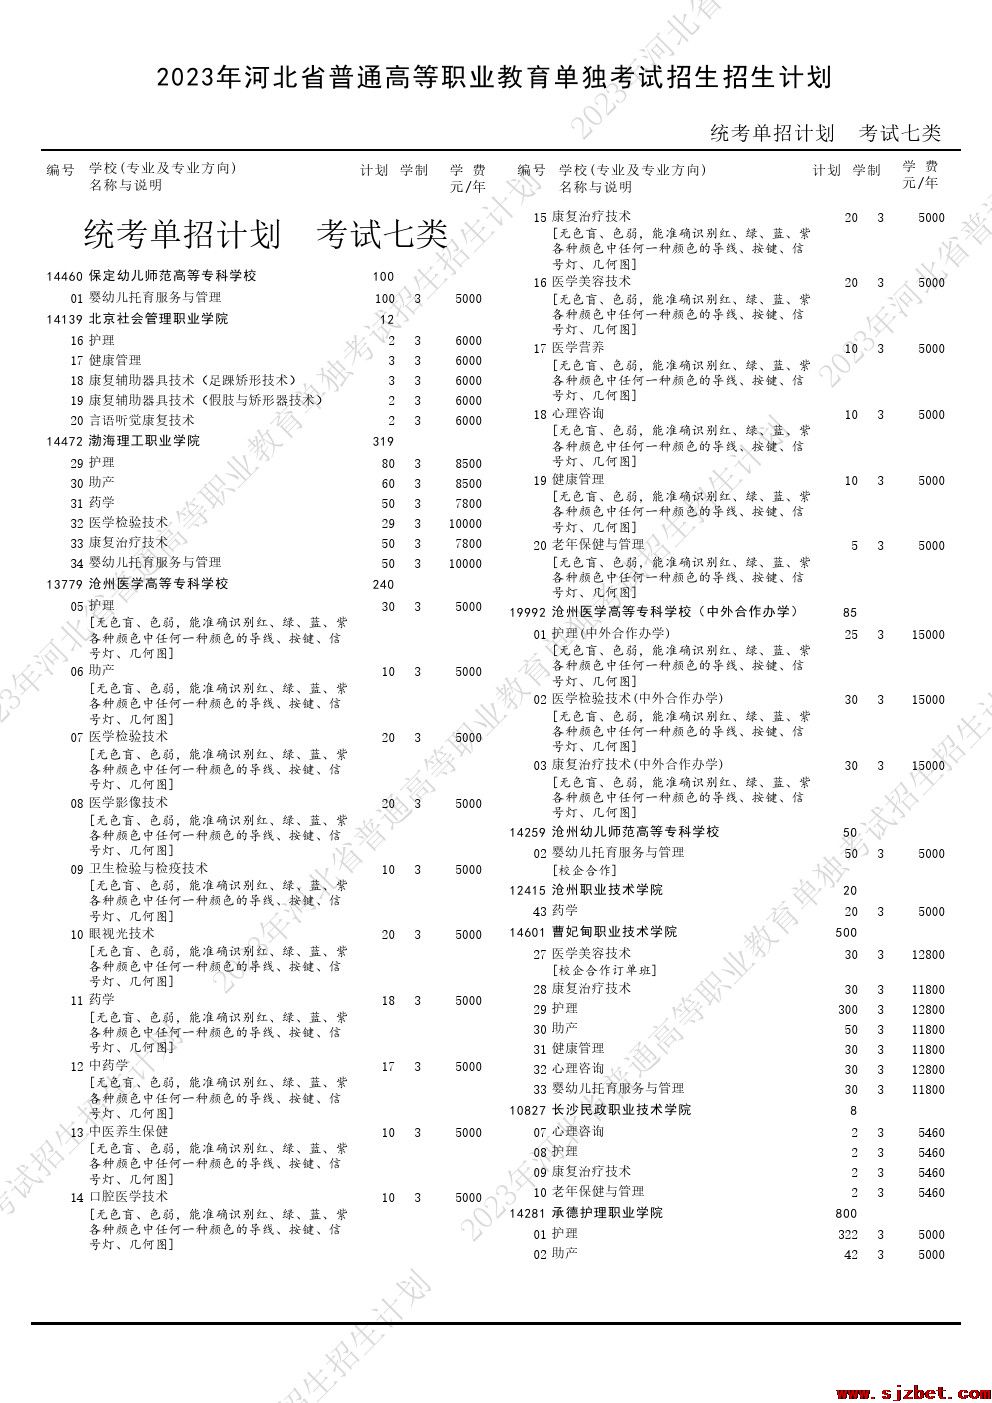 2023年河北省高职单招考试七类招生计划